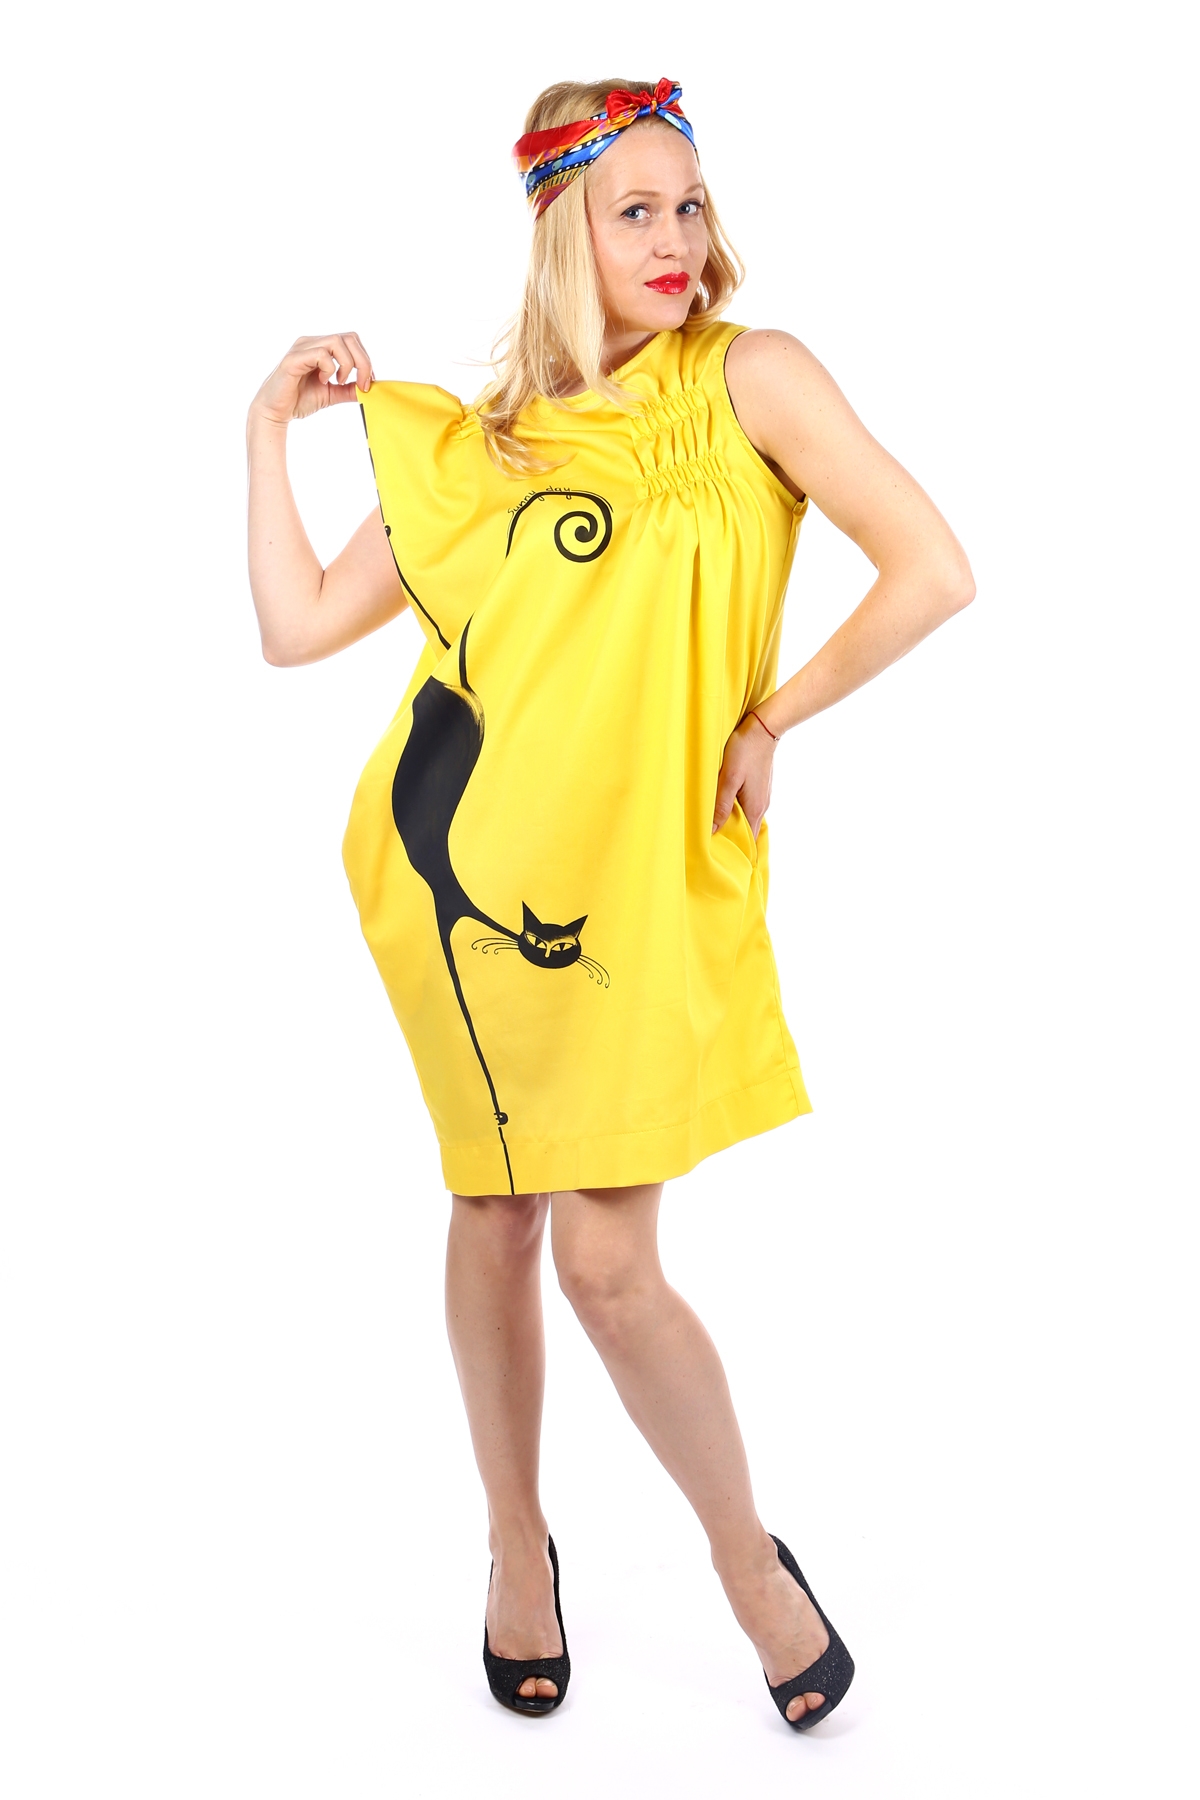 Дамска жълта рокля с ръчно рисуван котарак / SHOP MY J